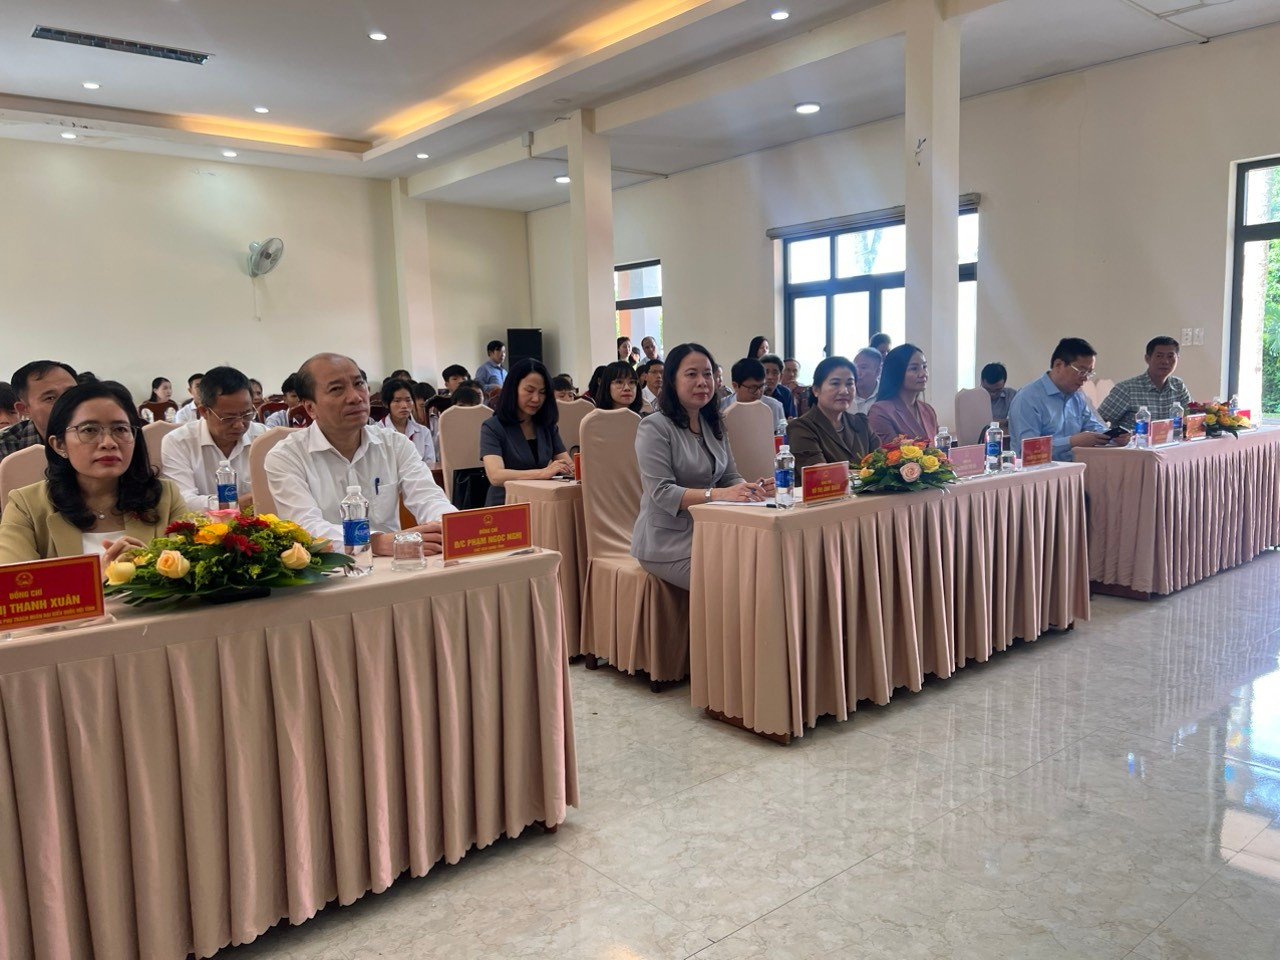 Trung tâm Bảo trợ xã hội tỉnh Đắk Lắk tổ chức đón tiếp Phó Chủ tịch nước Võ Thị Ánh Xuân đến thăm và tặng quà